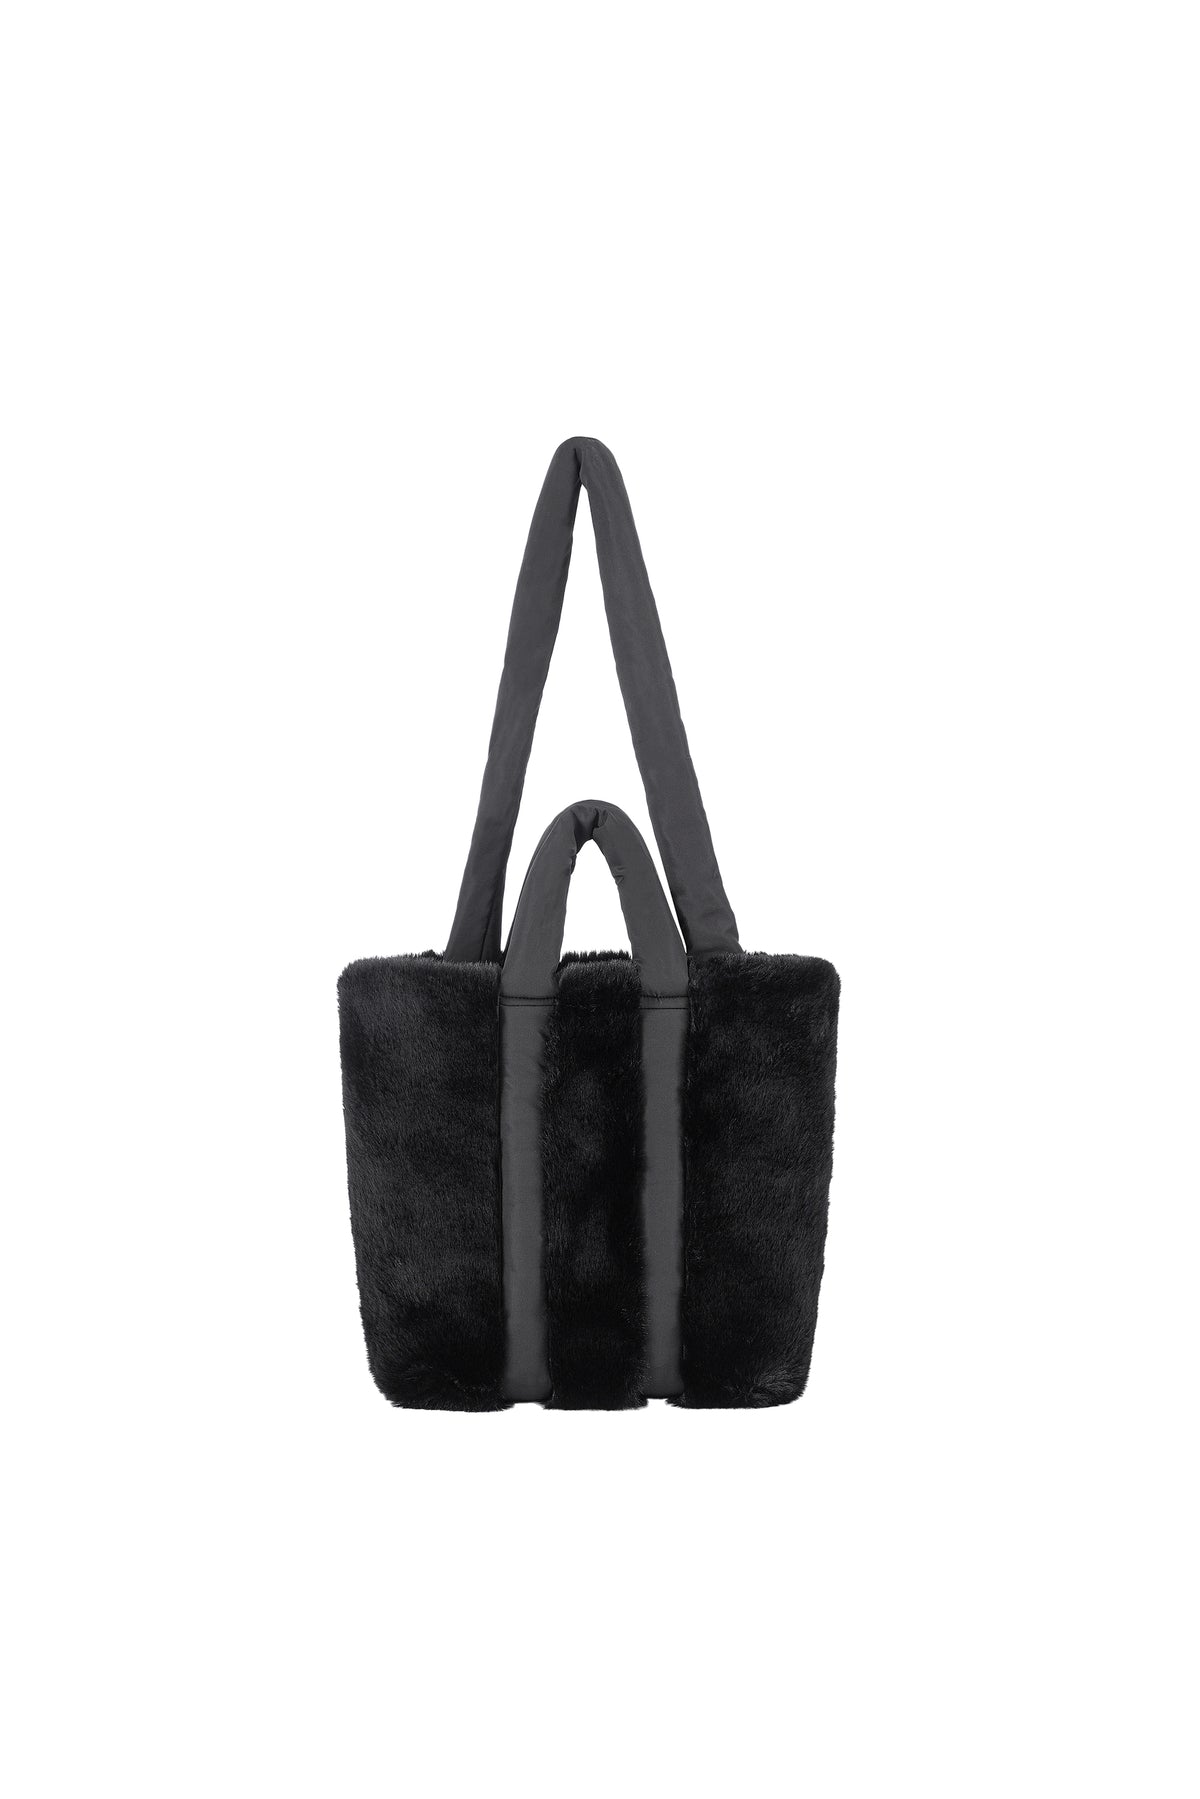 Reversible Tote Bag in Malachite/Black